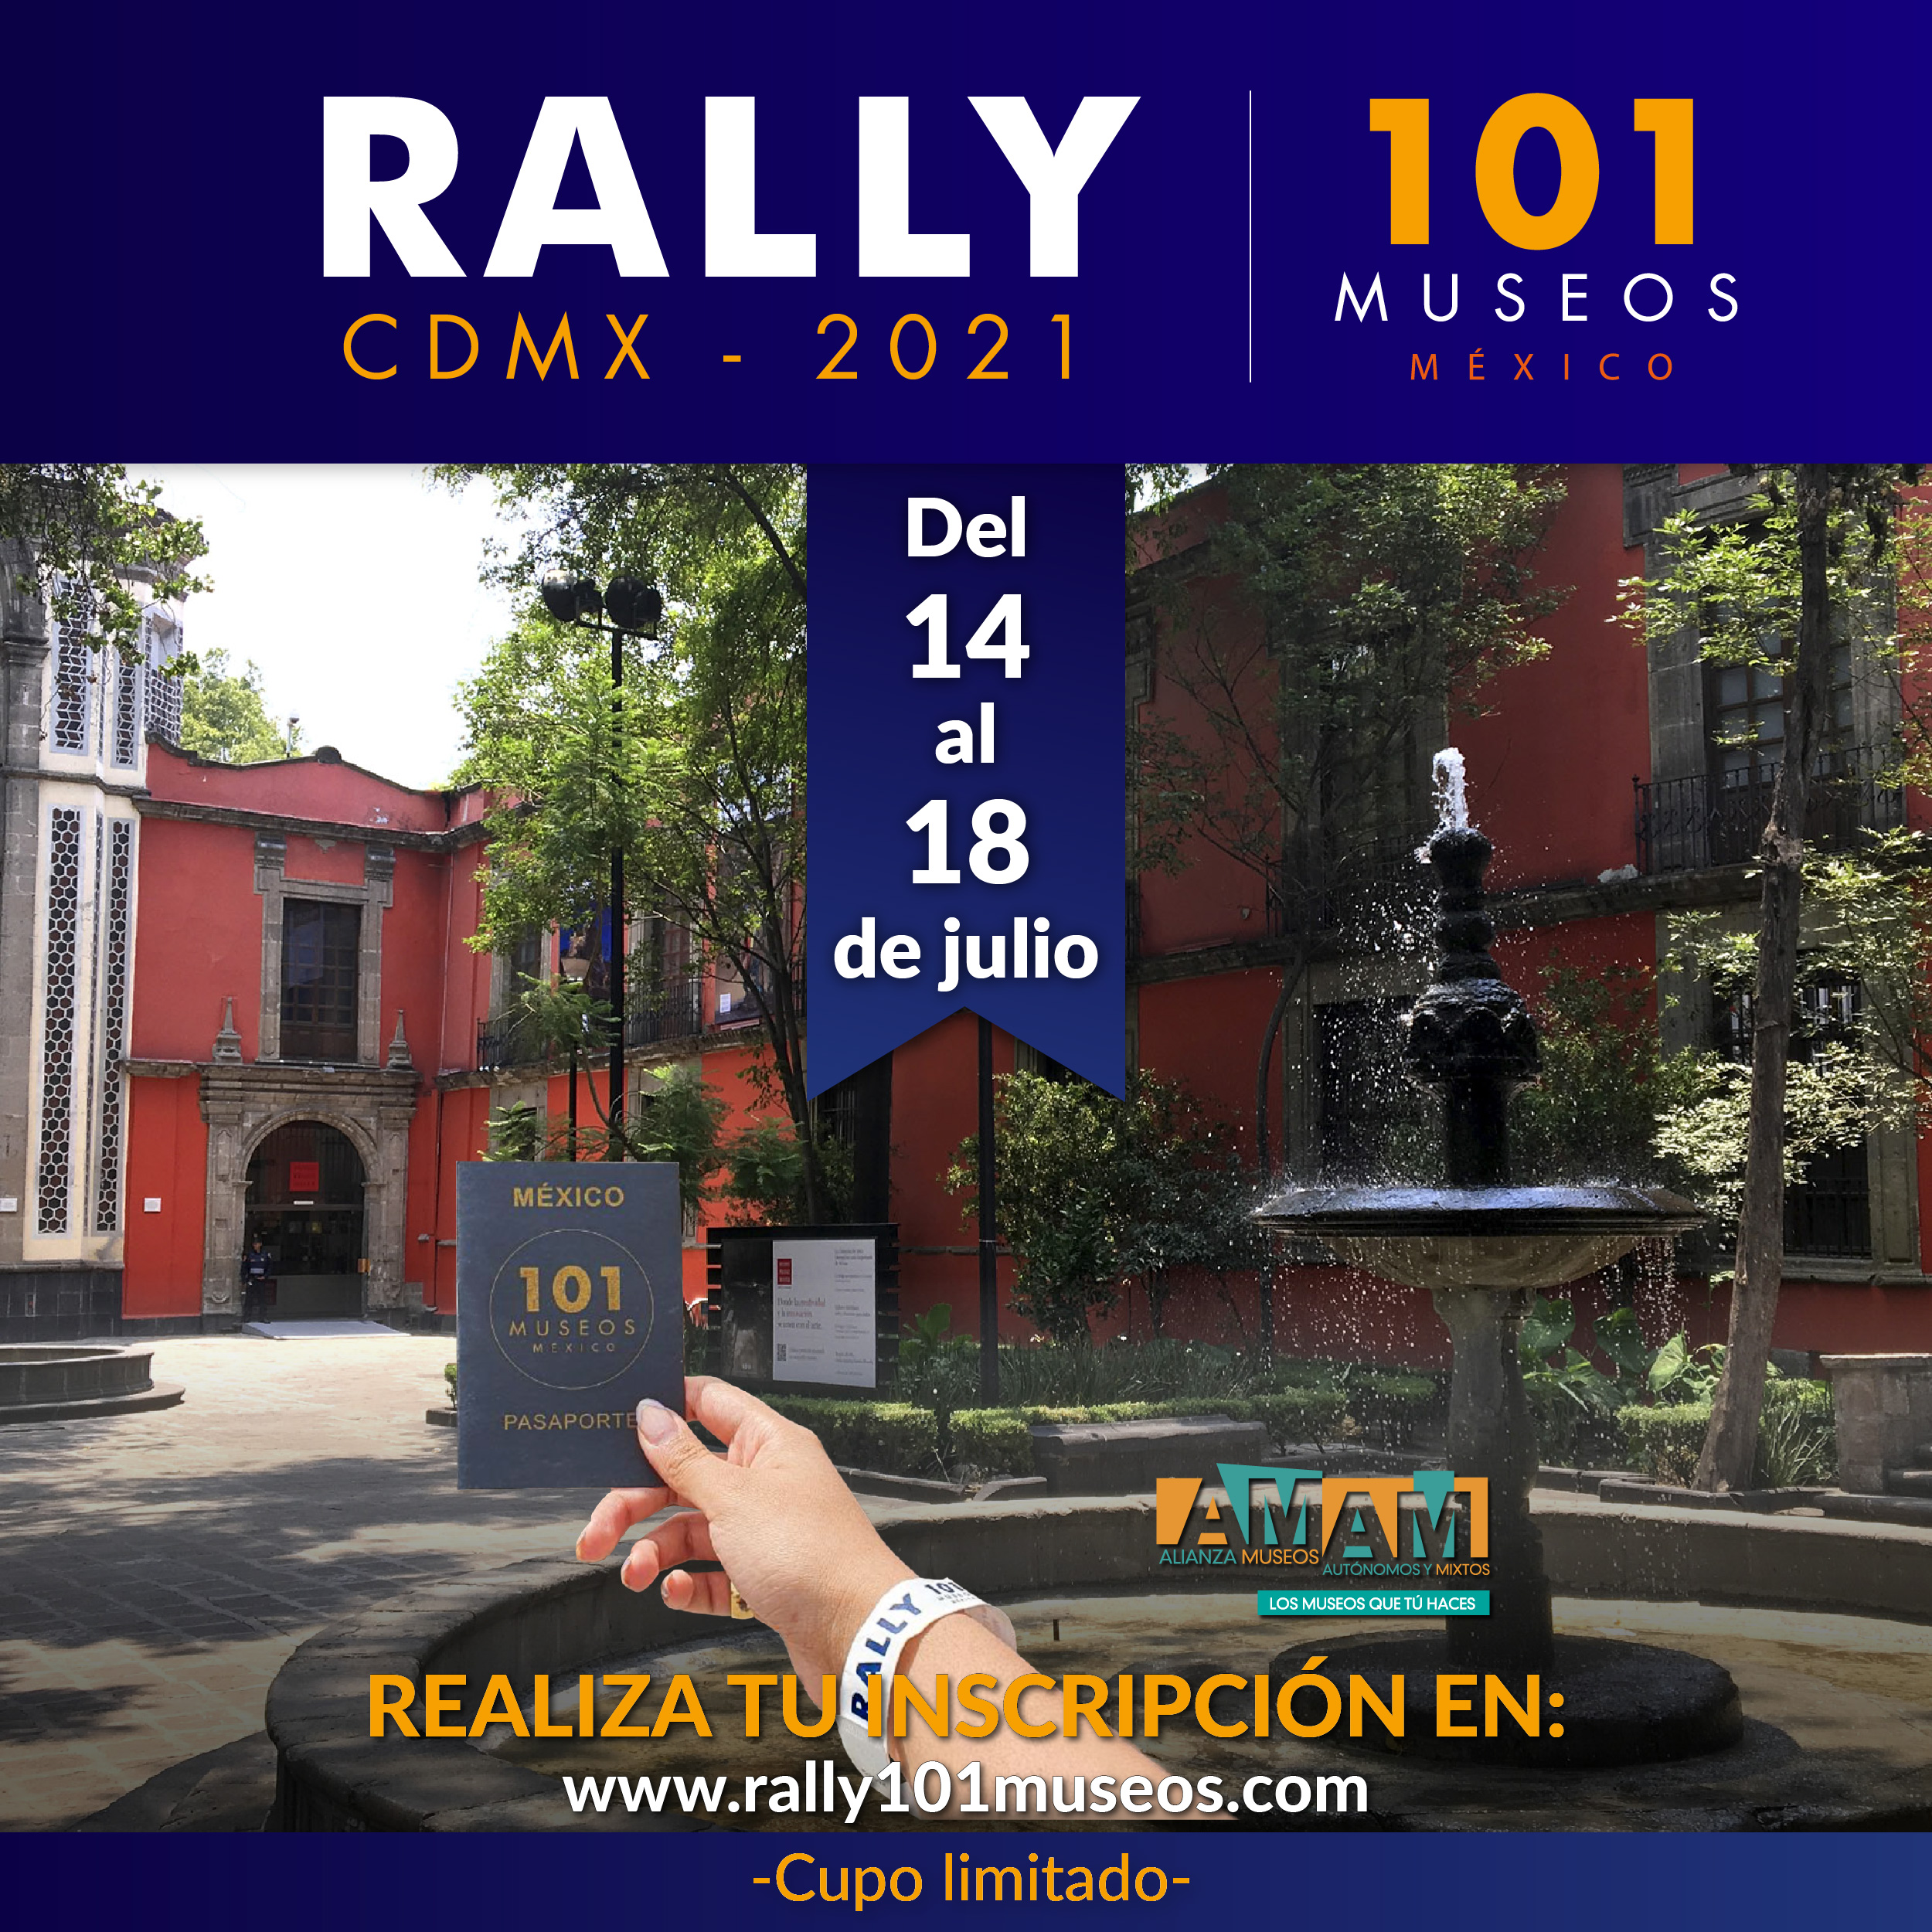 Rally 101 Museos: un desafío para reactivar los museos